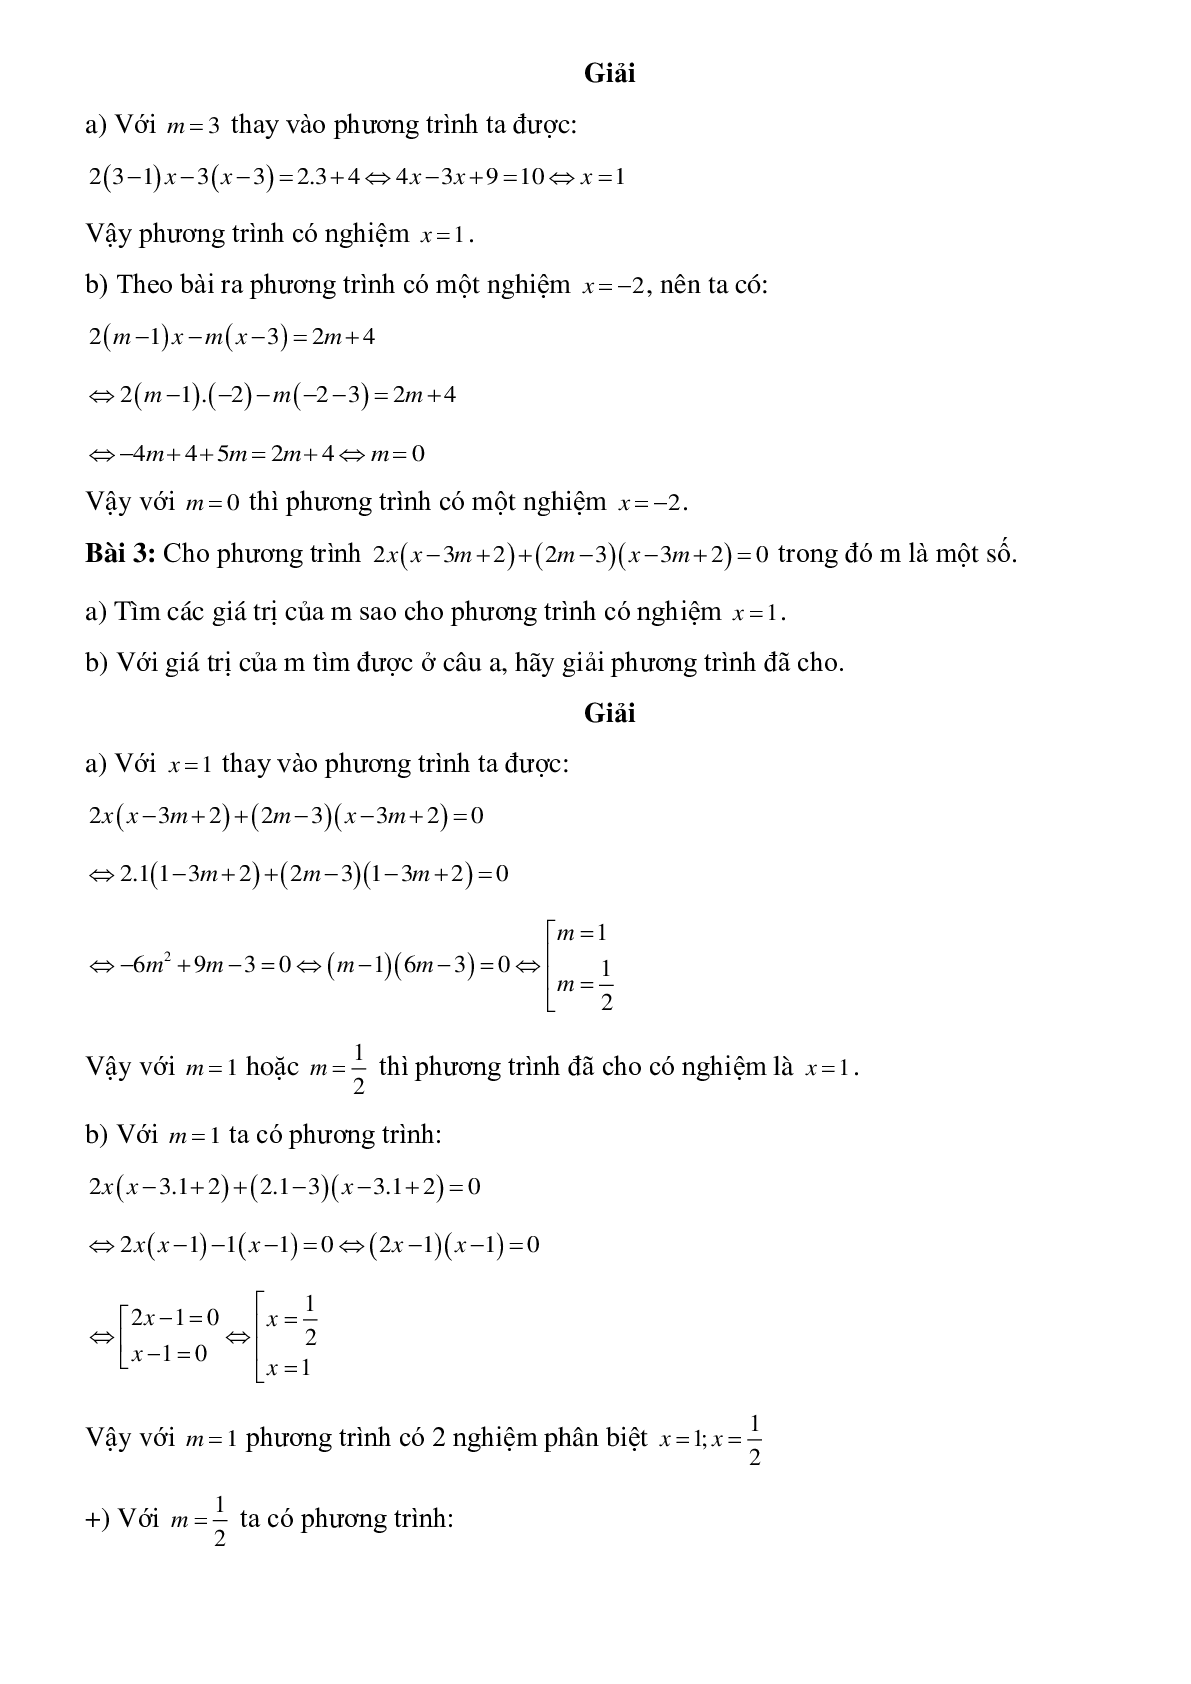 Hệ thống lý thuyết và bài tập về Phương trình bậc nhất và phương trình đưa về dạng ax+b=0 có lời giải (trang 5)